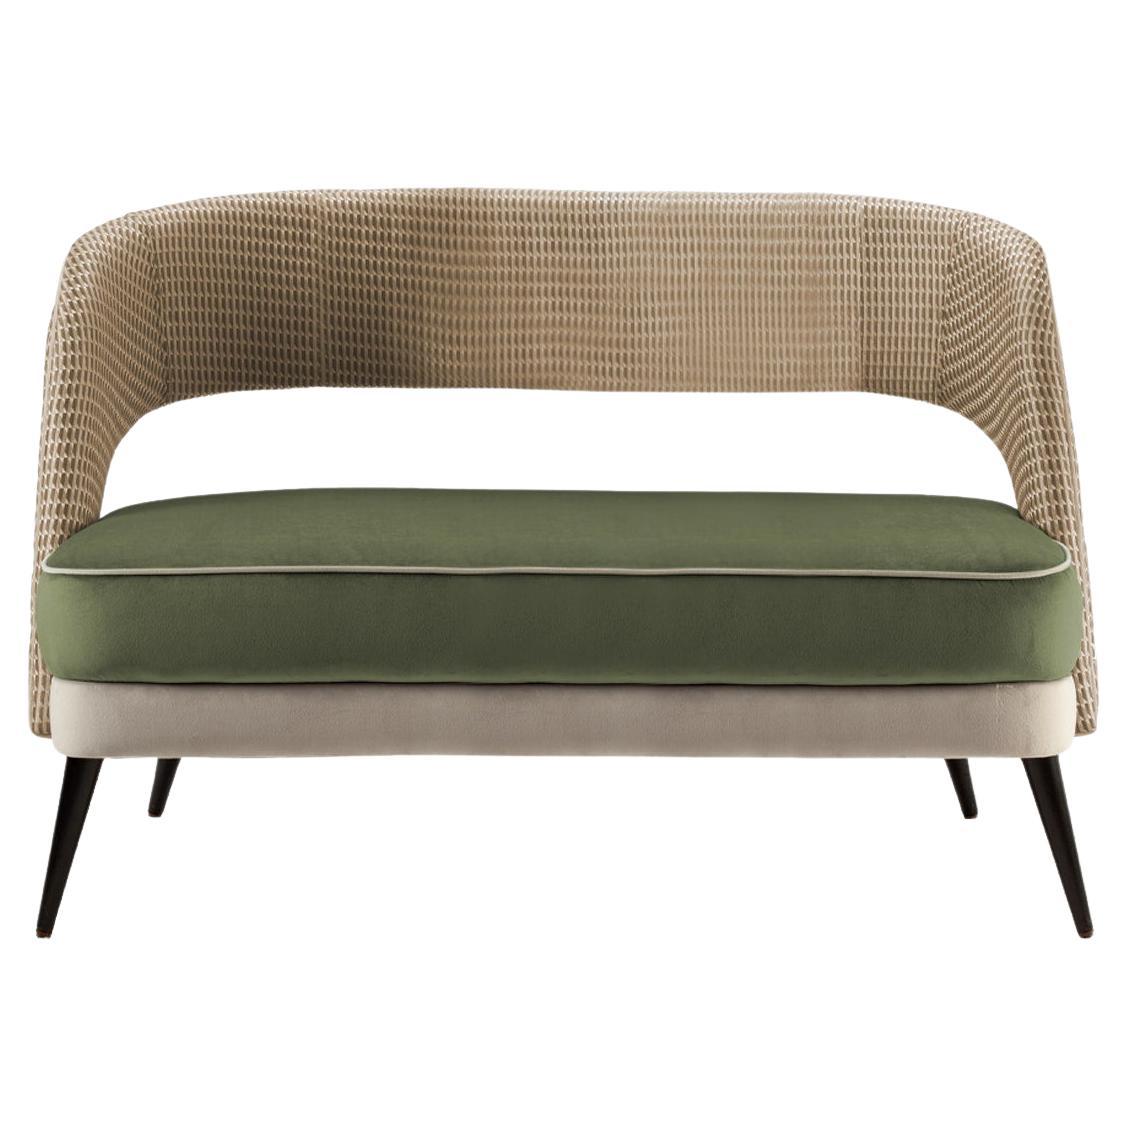 3-Sitzer-Sofa in Olivgrün mit Sitz und Rückenlehne aus strukturiertem Stoff mit Holzfüßen